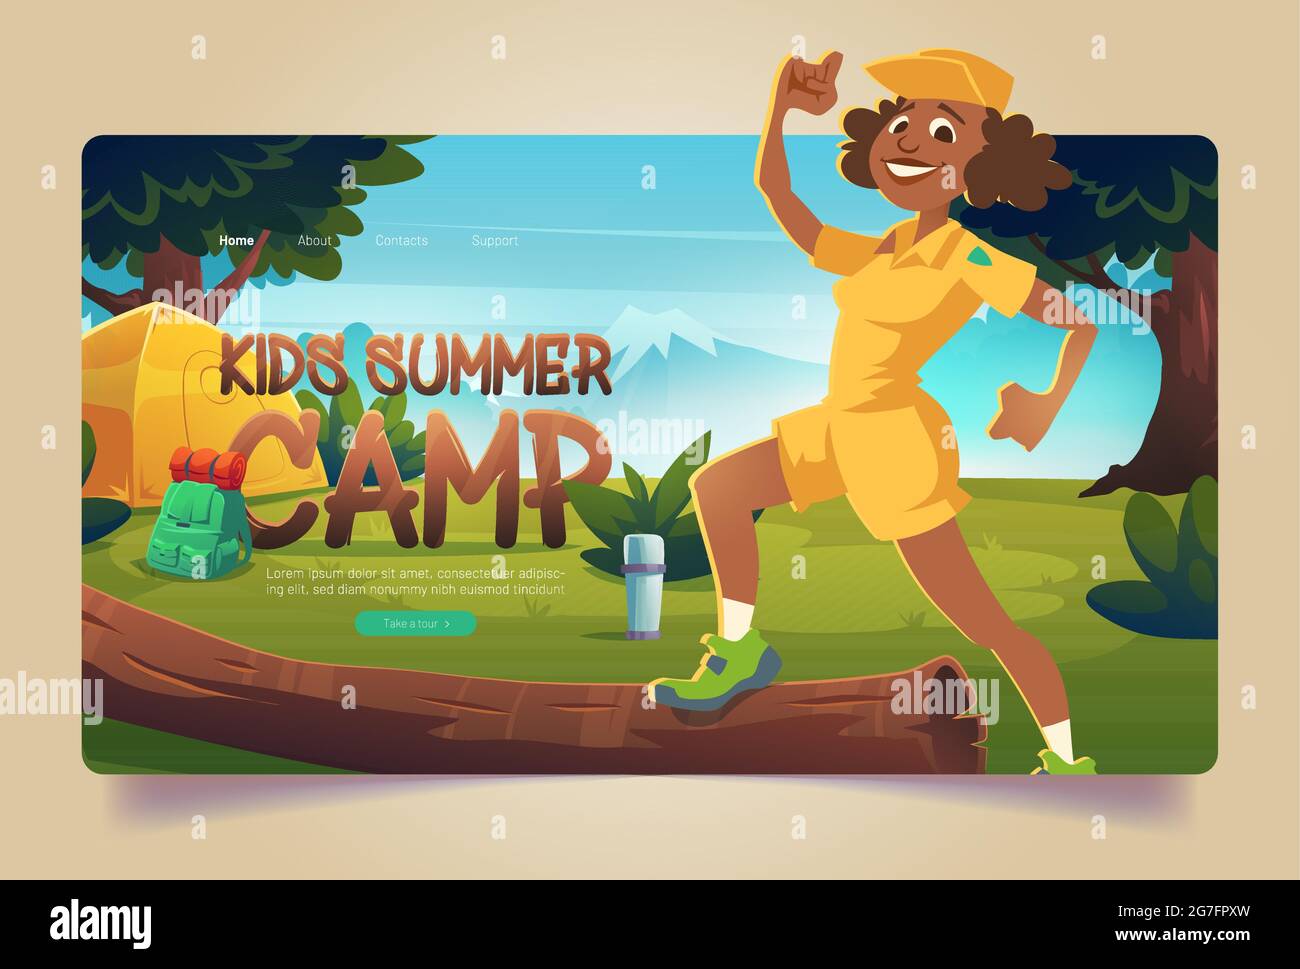 Kinder Sommer Camp Cartoon Landing Page, fröhliche Berater in Boyscout Uniform auf Wanderung Wald camping mit Zelt, Vakuum-Flasche und Rucksack. Sommerurlaub, Wanderaktivitäten, Vector Webbanner Stock Vektor